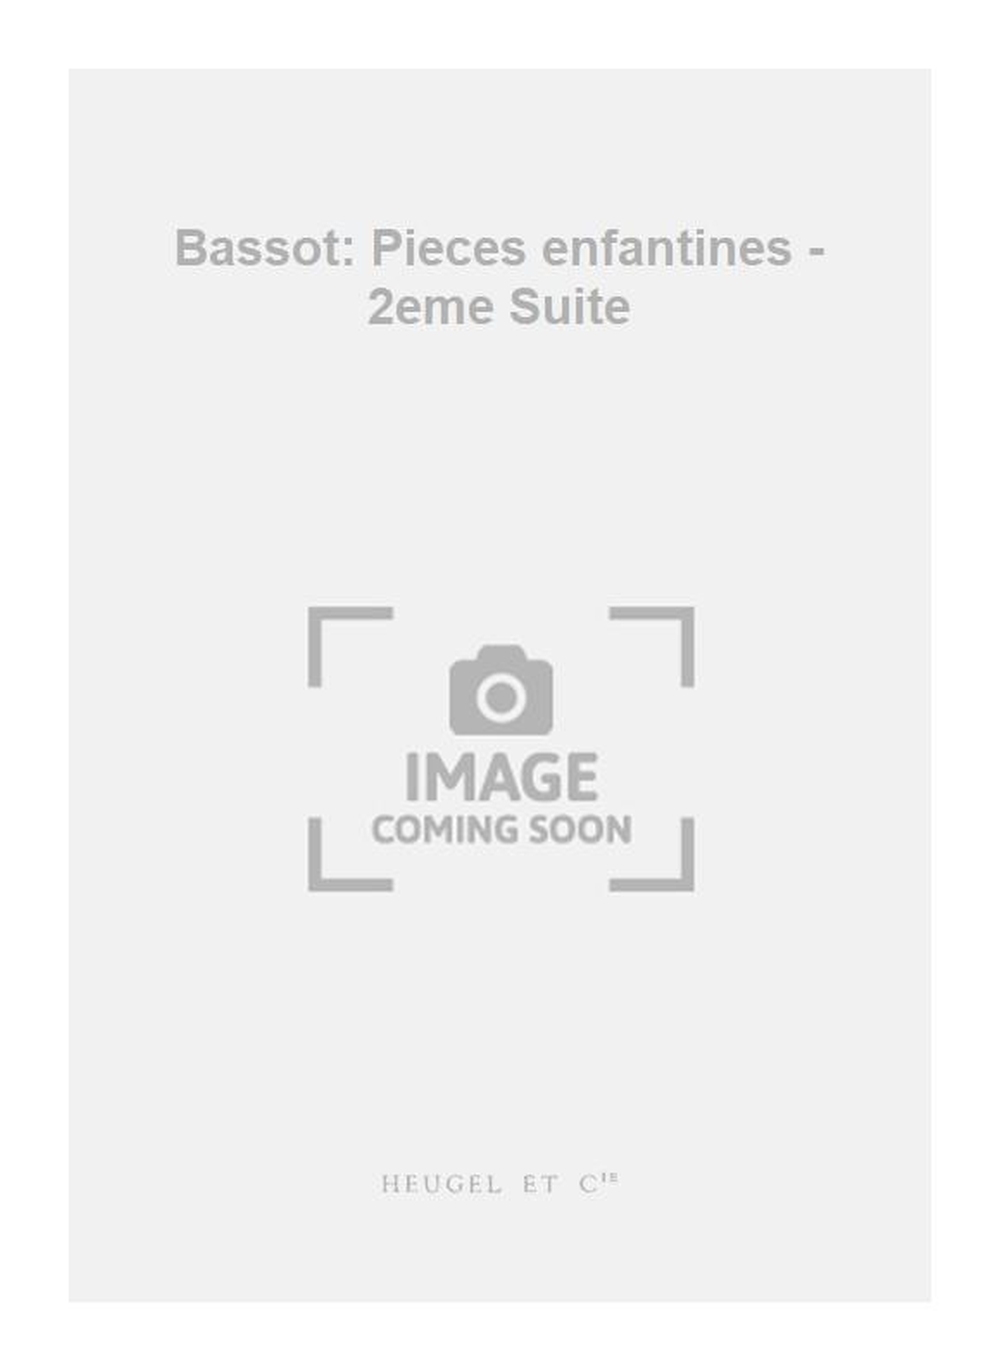 Nanine Bassot: Bassot: Pieces enfantines - 2eme Suite